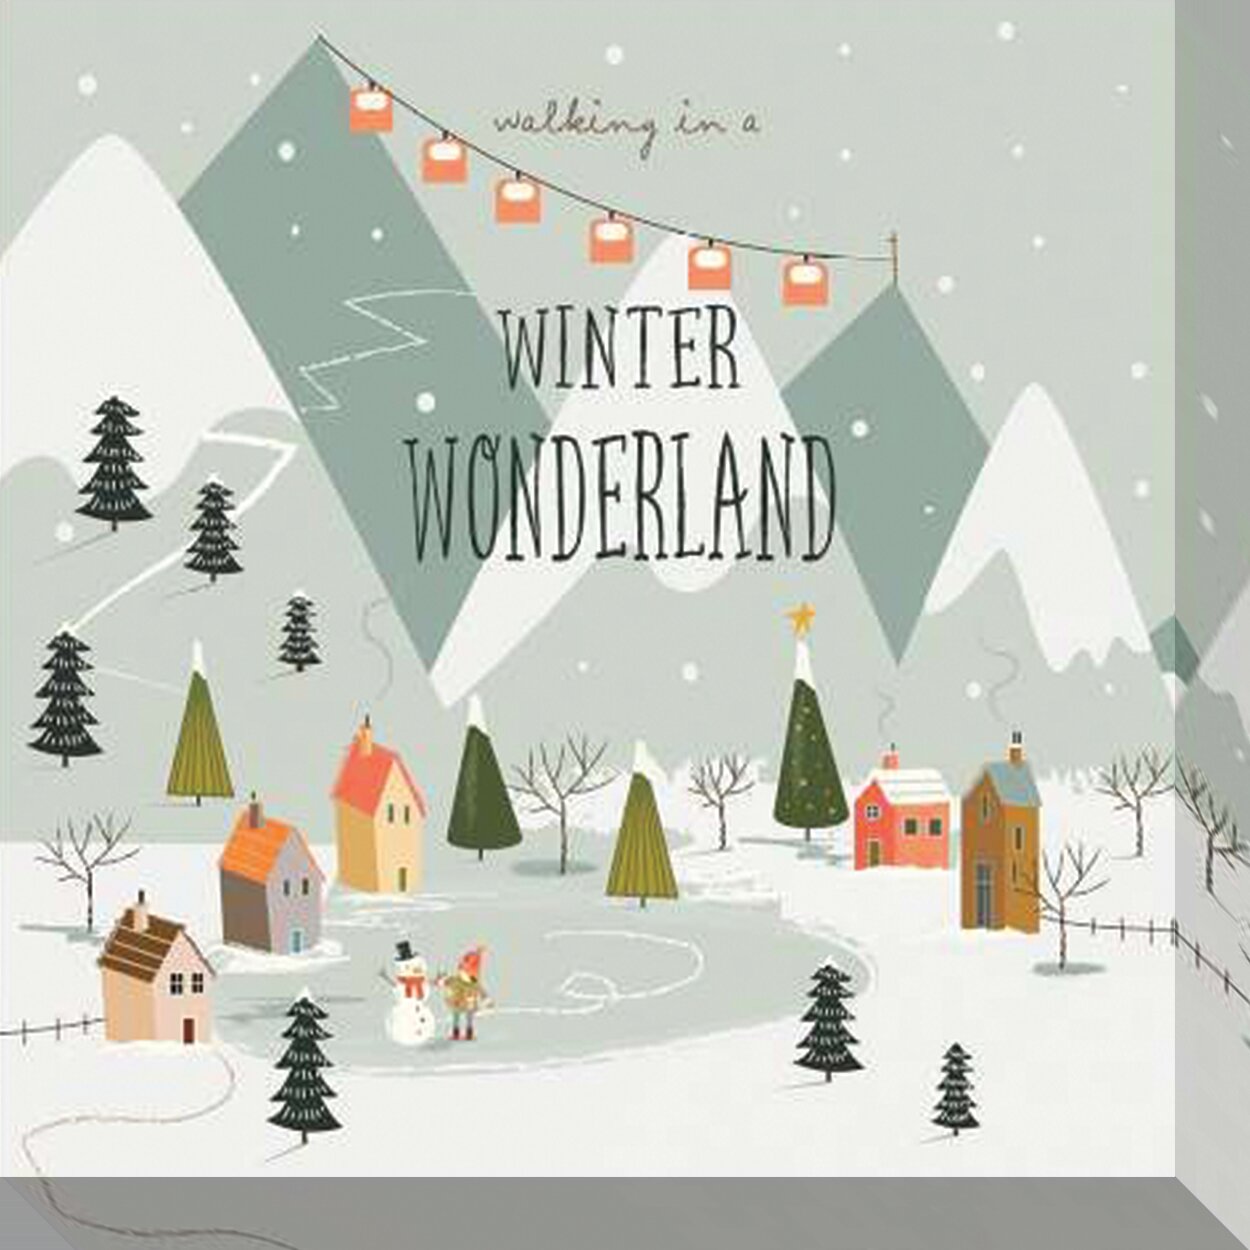 Privilegium værtinde Krudt The Holiday Aisle® Walking In A Winter Wonderland On Canvas Print | Wayfair